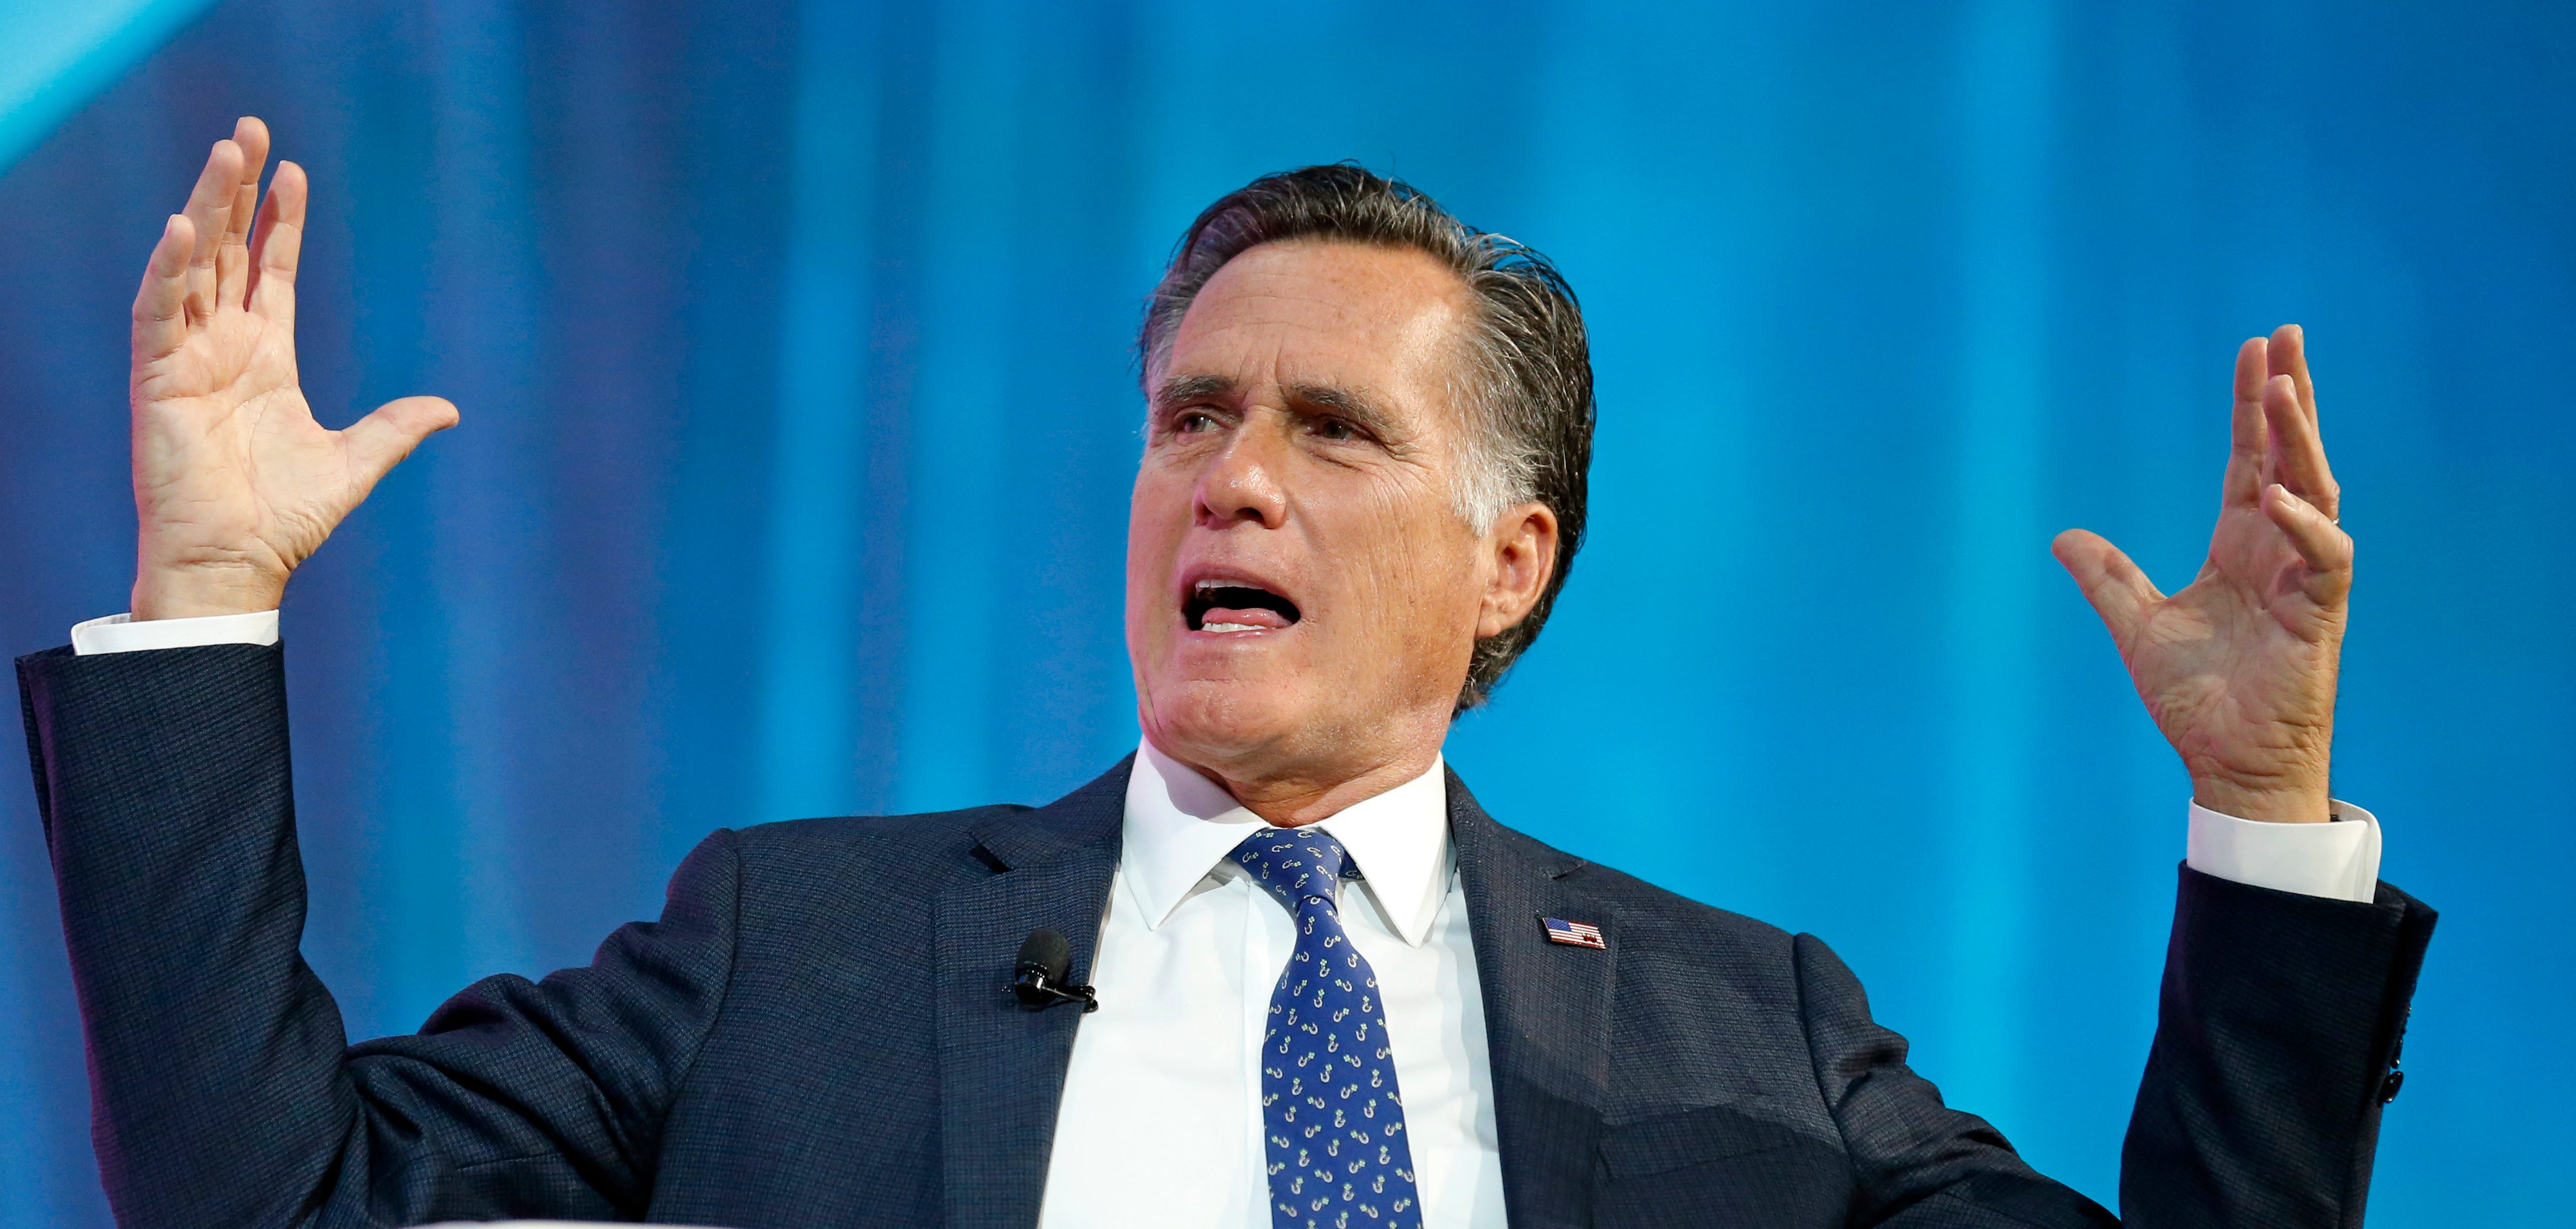 Mitt Romney to make Utah Senate race announcement on Feb. 15